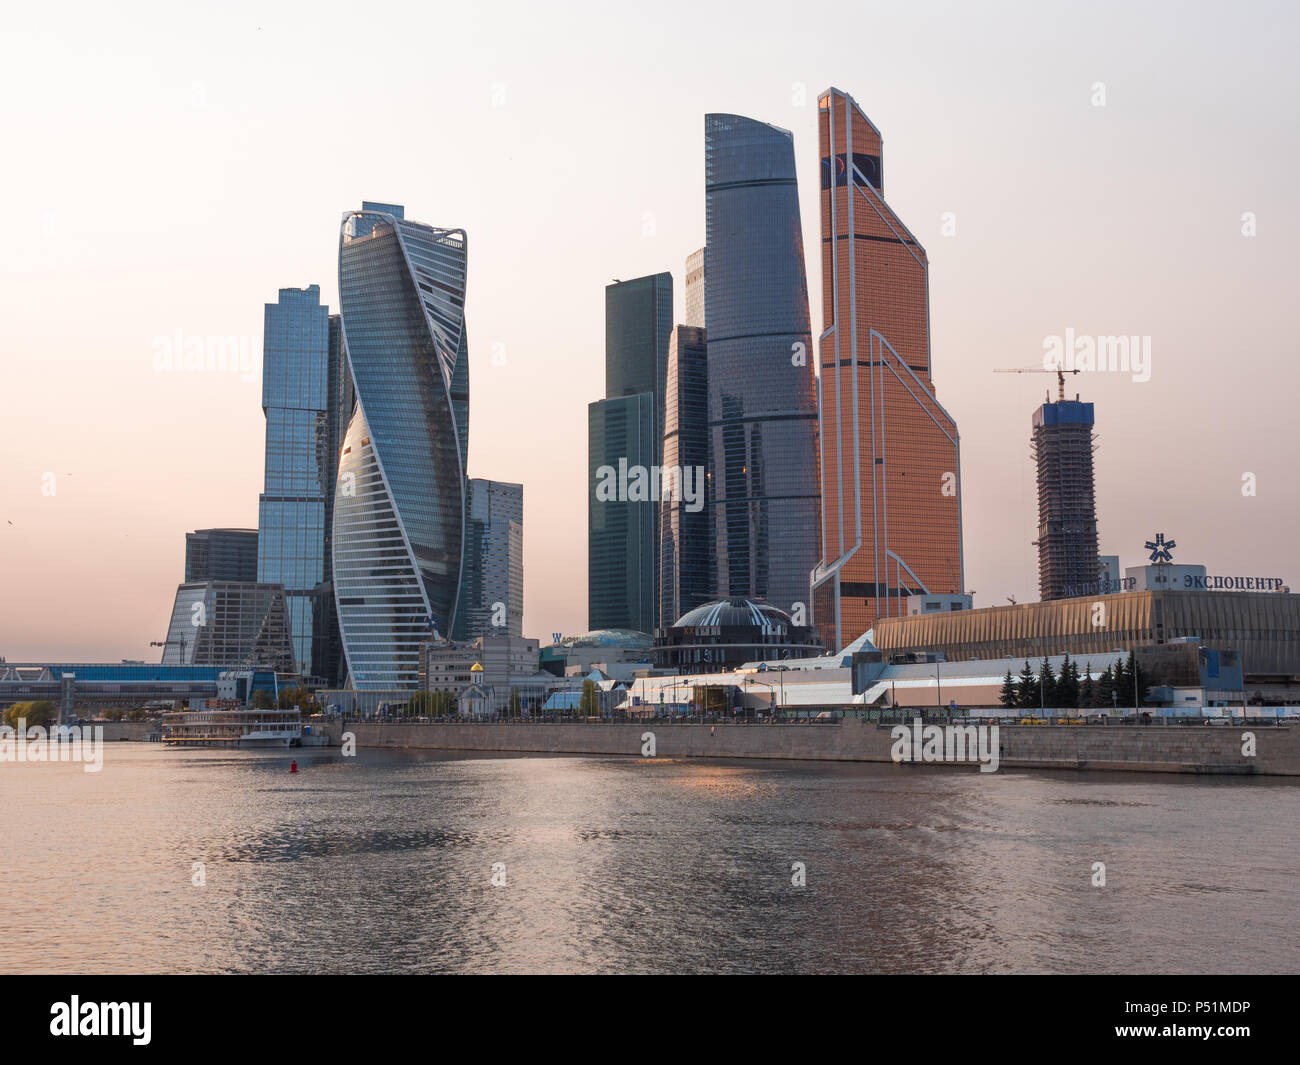 Moskau - 14. Oktober: Moskau, moderne Gebäude aus Glas und Stahl Wolkenkratzer gegen den Himmel am 14. Oktober 2017 in Moskau, Russland Stockfoto